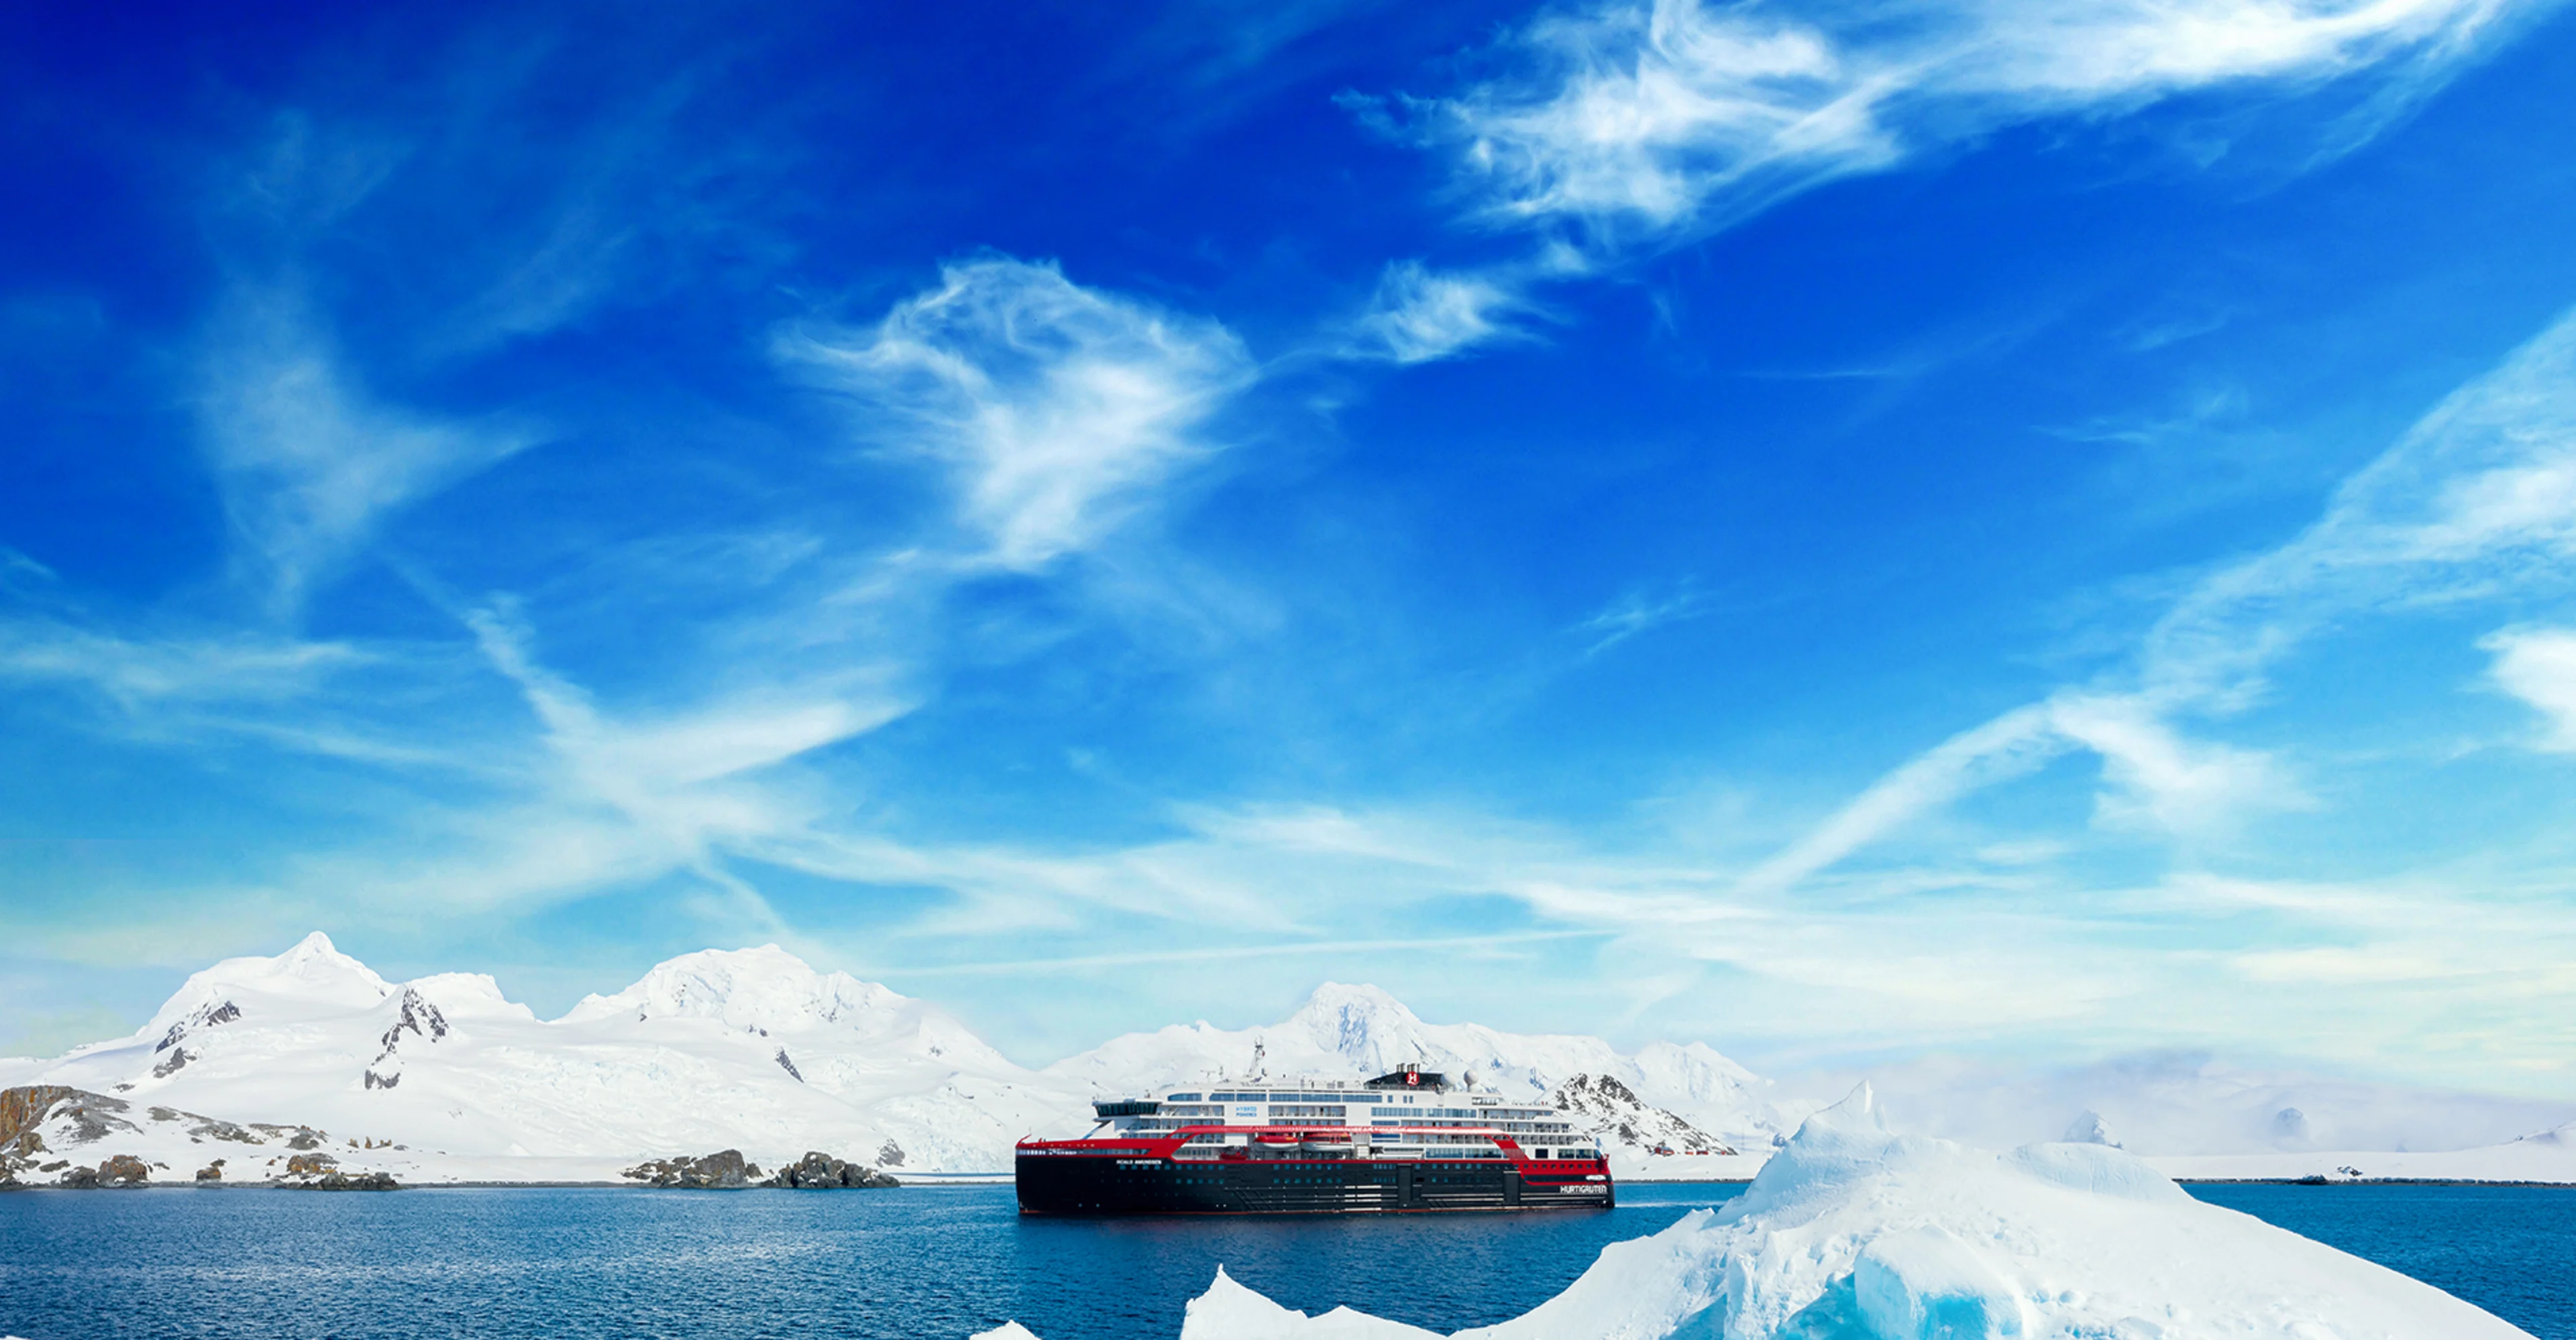 MS-Roald-Amundsen-Antarktis-HGR-142135- Foto_Dan_Avila_1920px